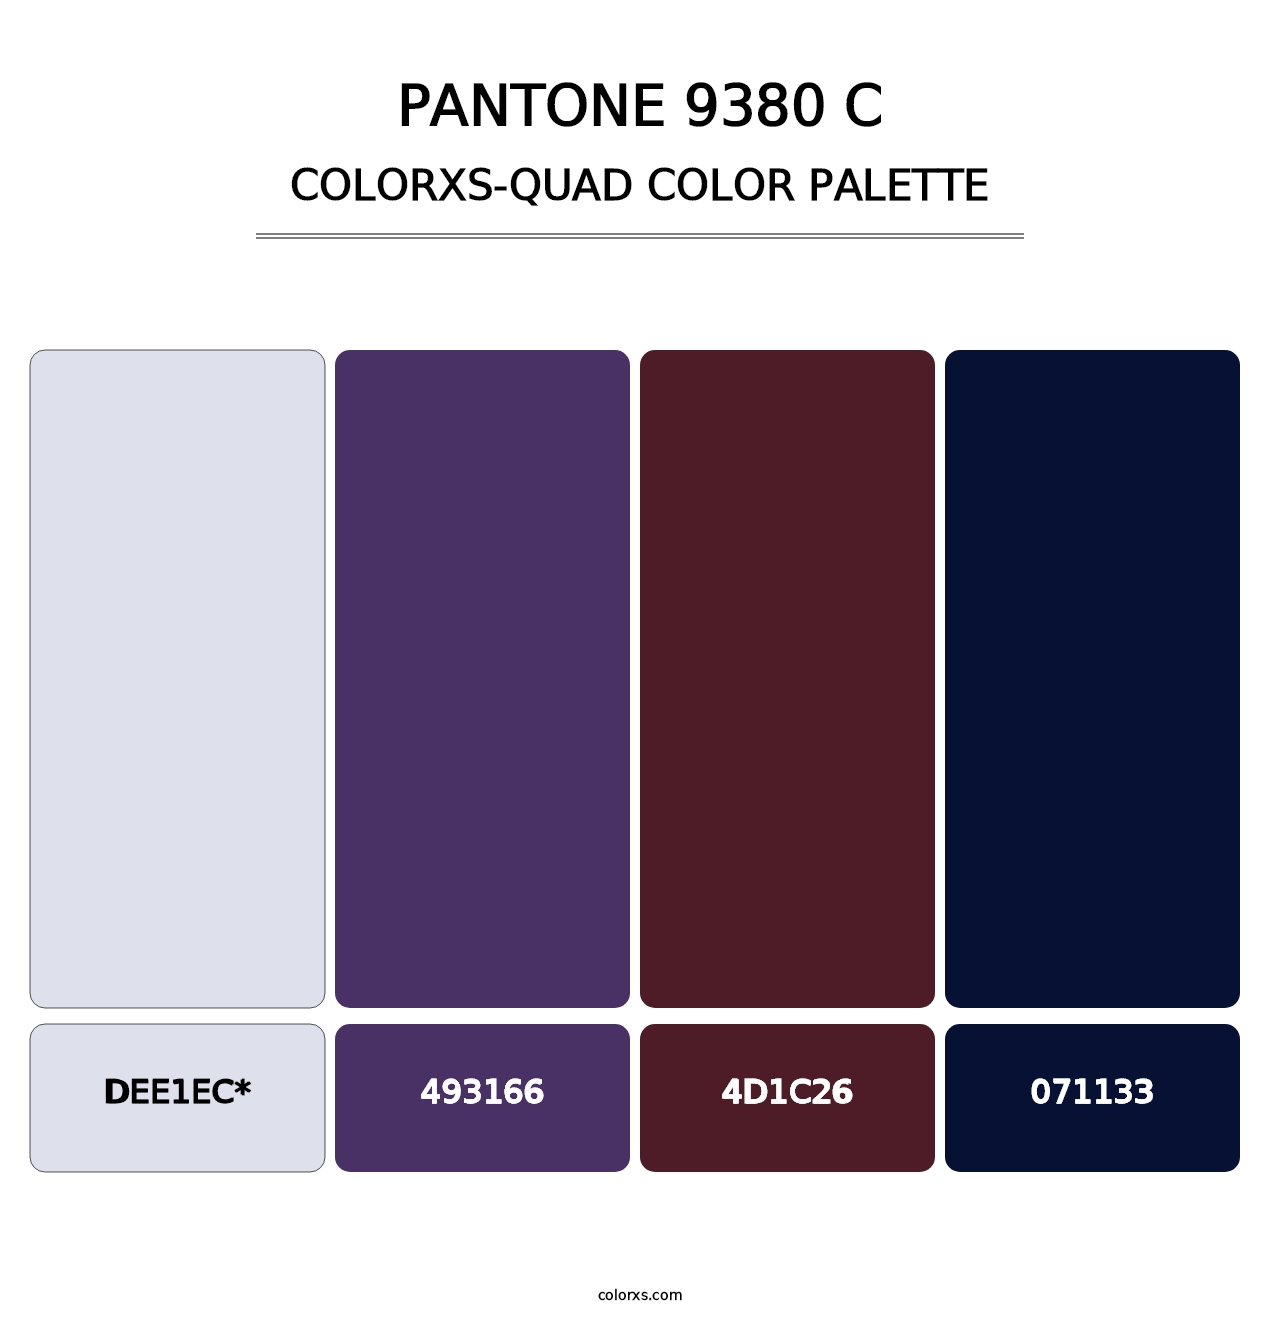 PANTONE 9380 C - Colorxs Quad Palette